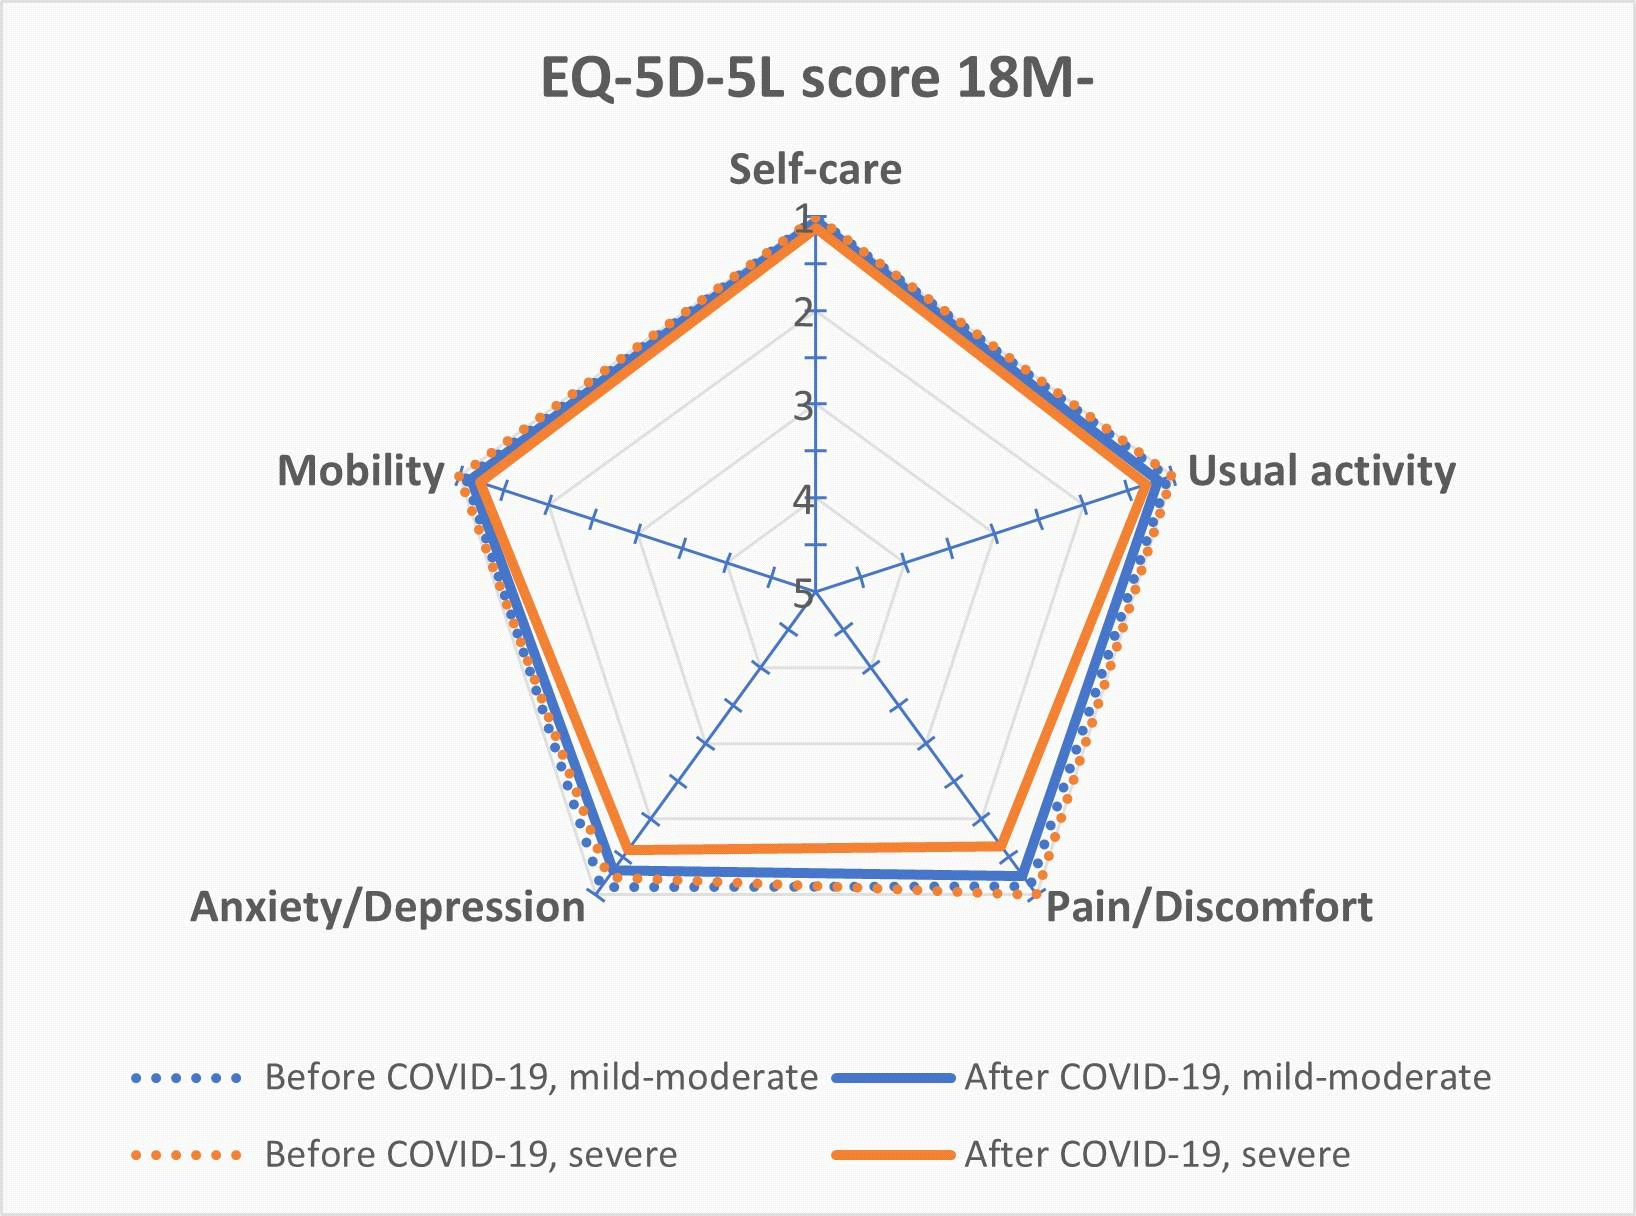 EQ-5D-5L 각 지표의 평균 값을 통한 코로나19 감염 전과 12-18개월 후의 비교